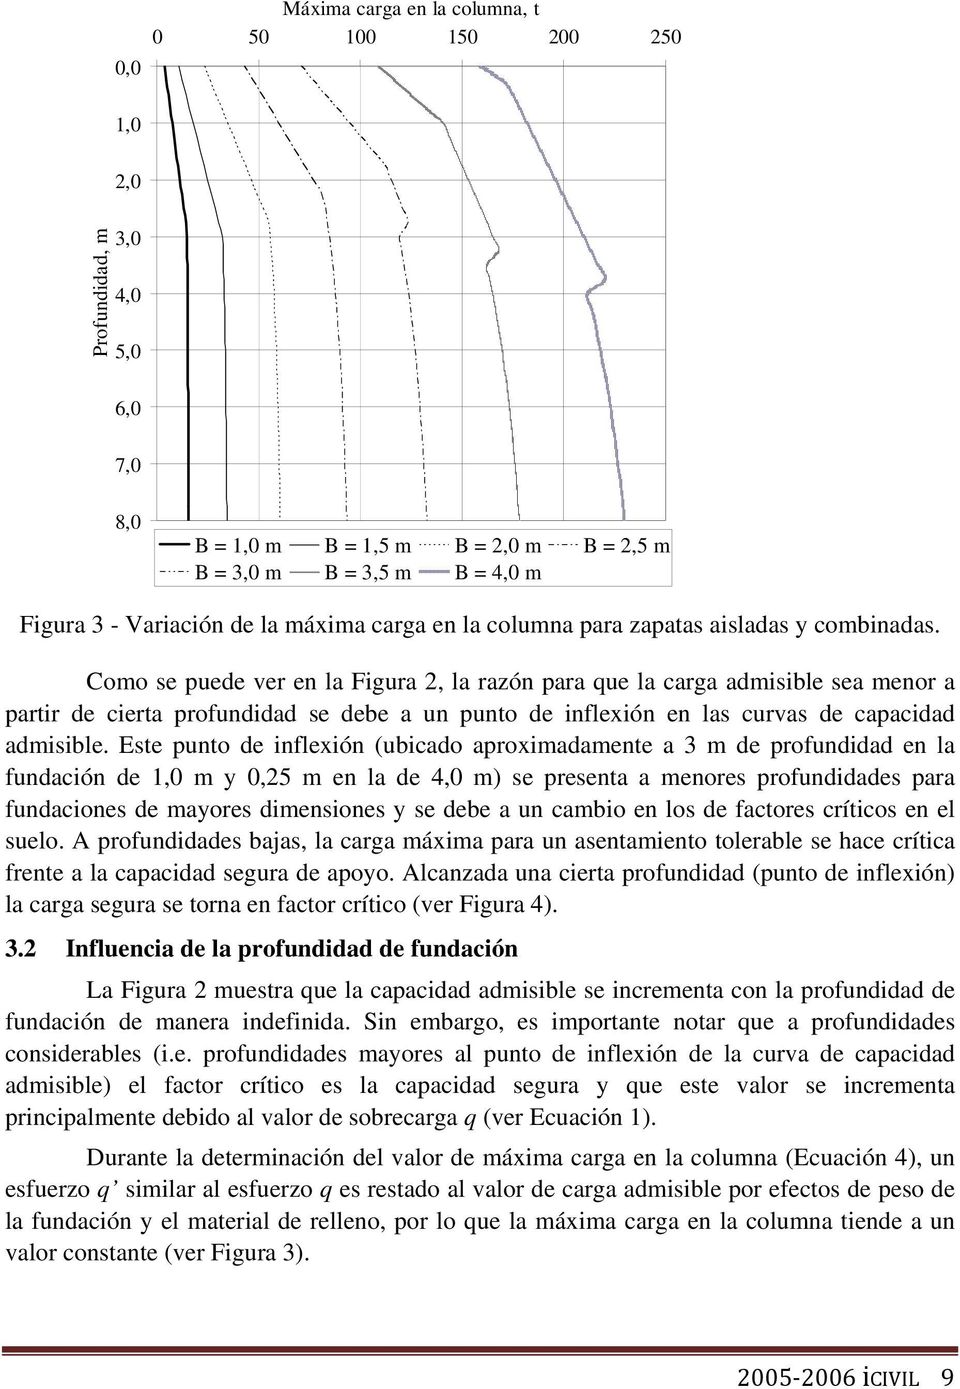 Como se puede ver en la Figura 2, la razón para que la carga admisible sea menor a partir de cierta profundidad se debe a un punto de inflexión en las curvas de capacidad admisible.